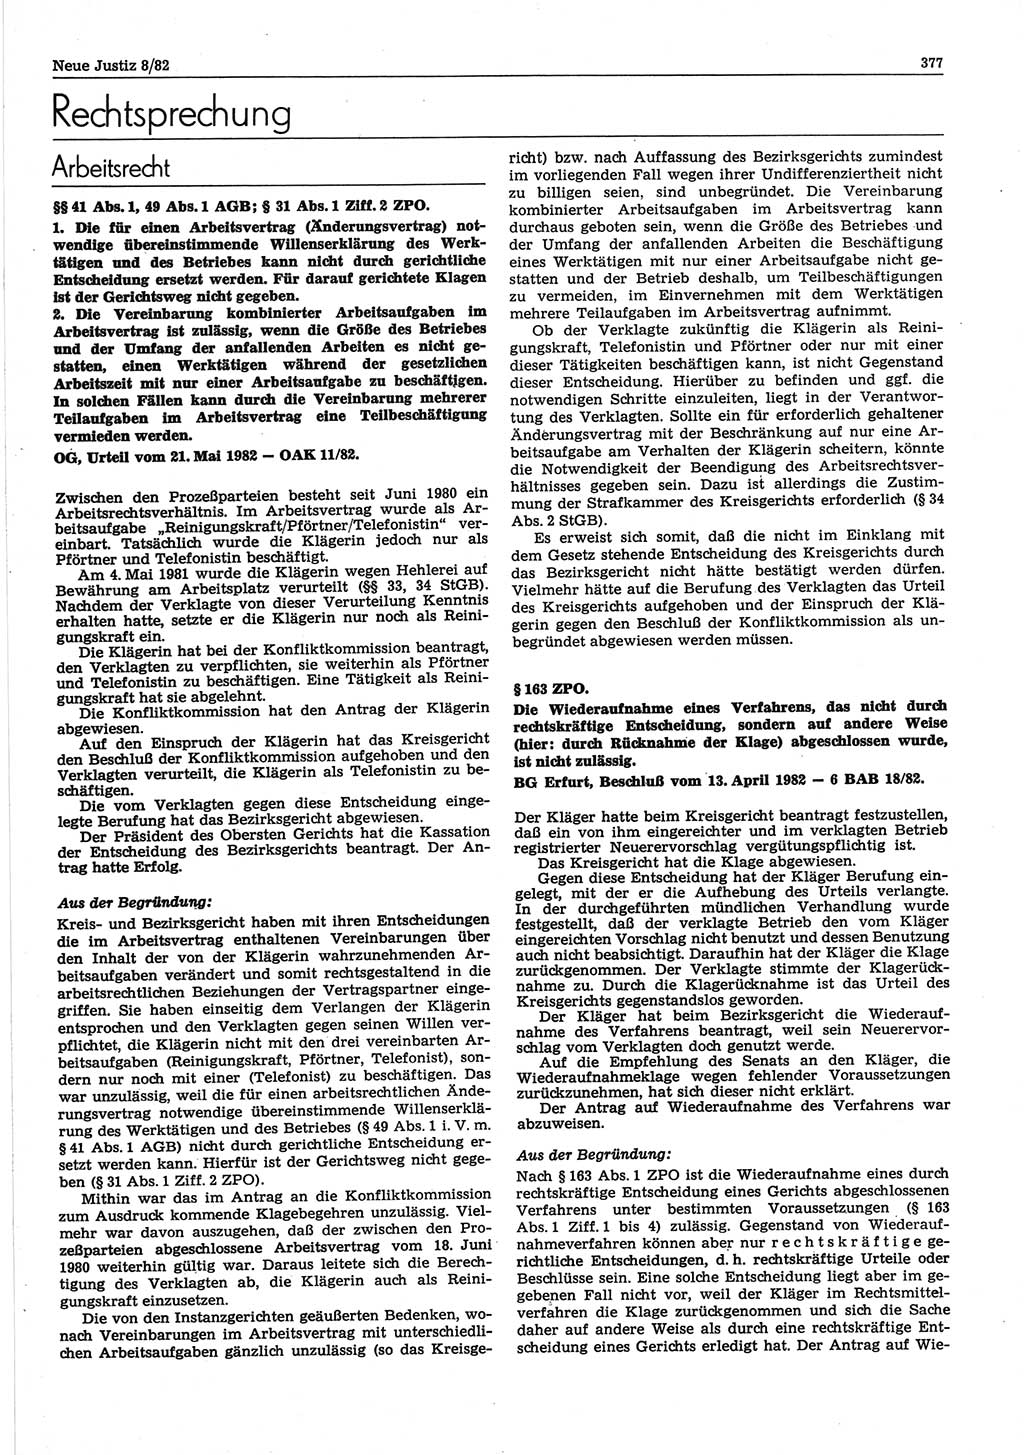 Neue Justiz (NJ), Zeitschrift für sozialistisches Recht und Gesetzlichkeit [Deutsche Demokratische Republik (DDR)], 36. Jahrgang 1982, Seite 377 (NJ DDR 1982, S. 377)